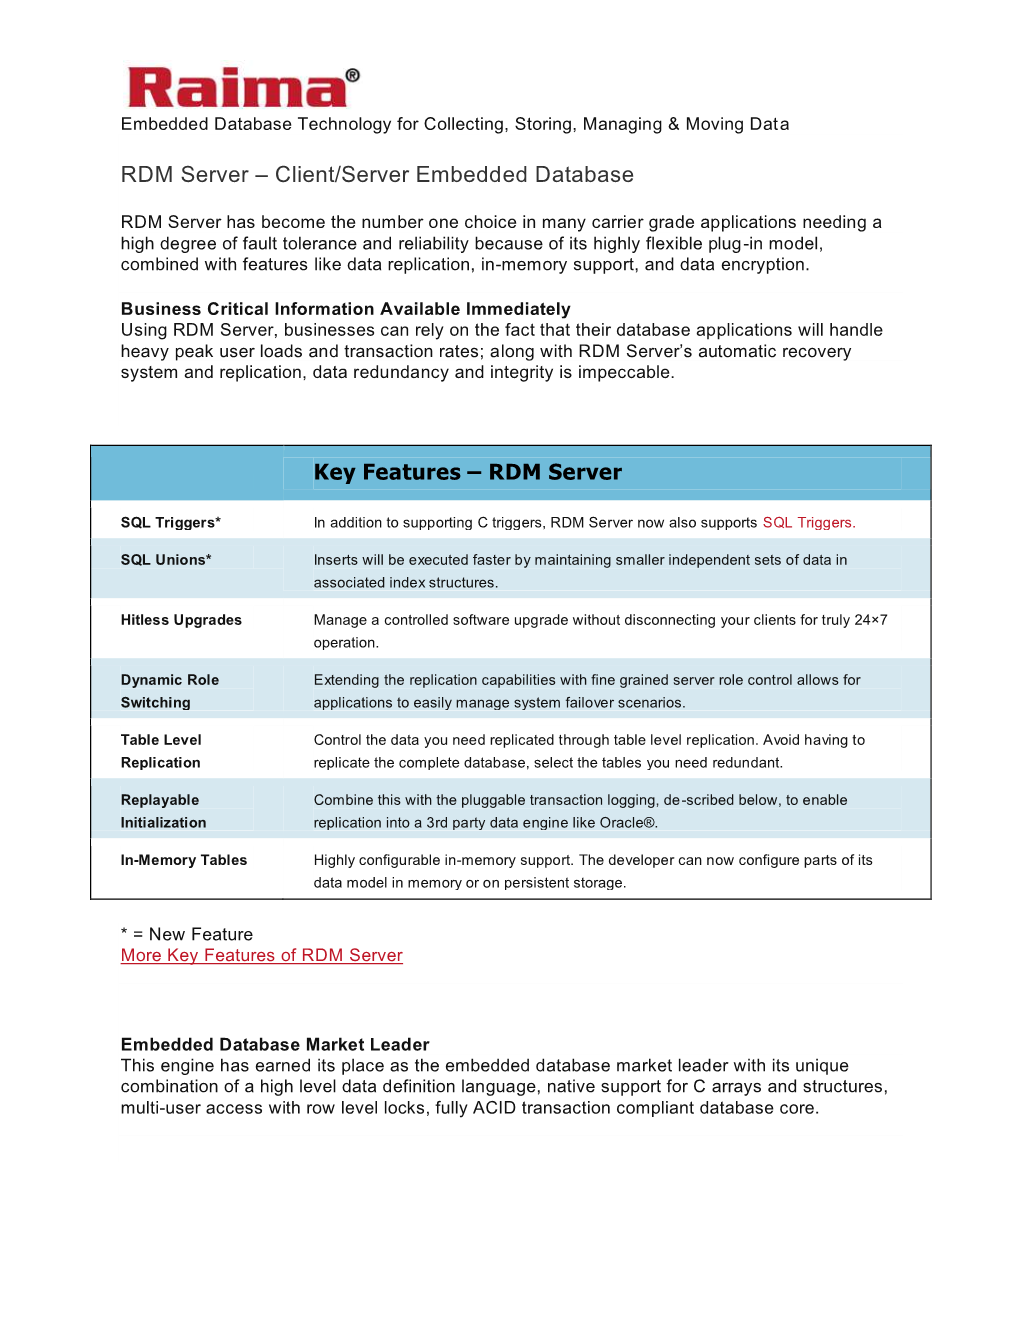 RDM Server – Client/Server Embedded Database